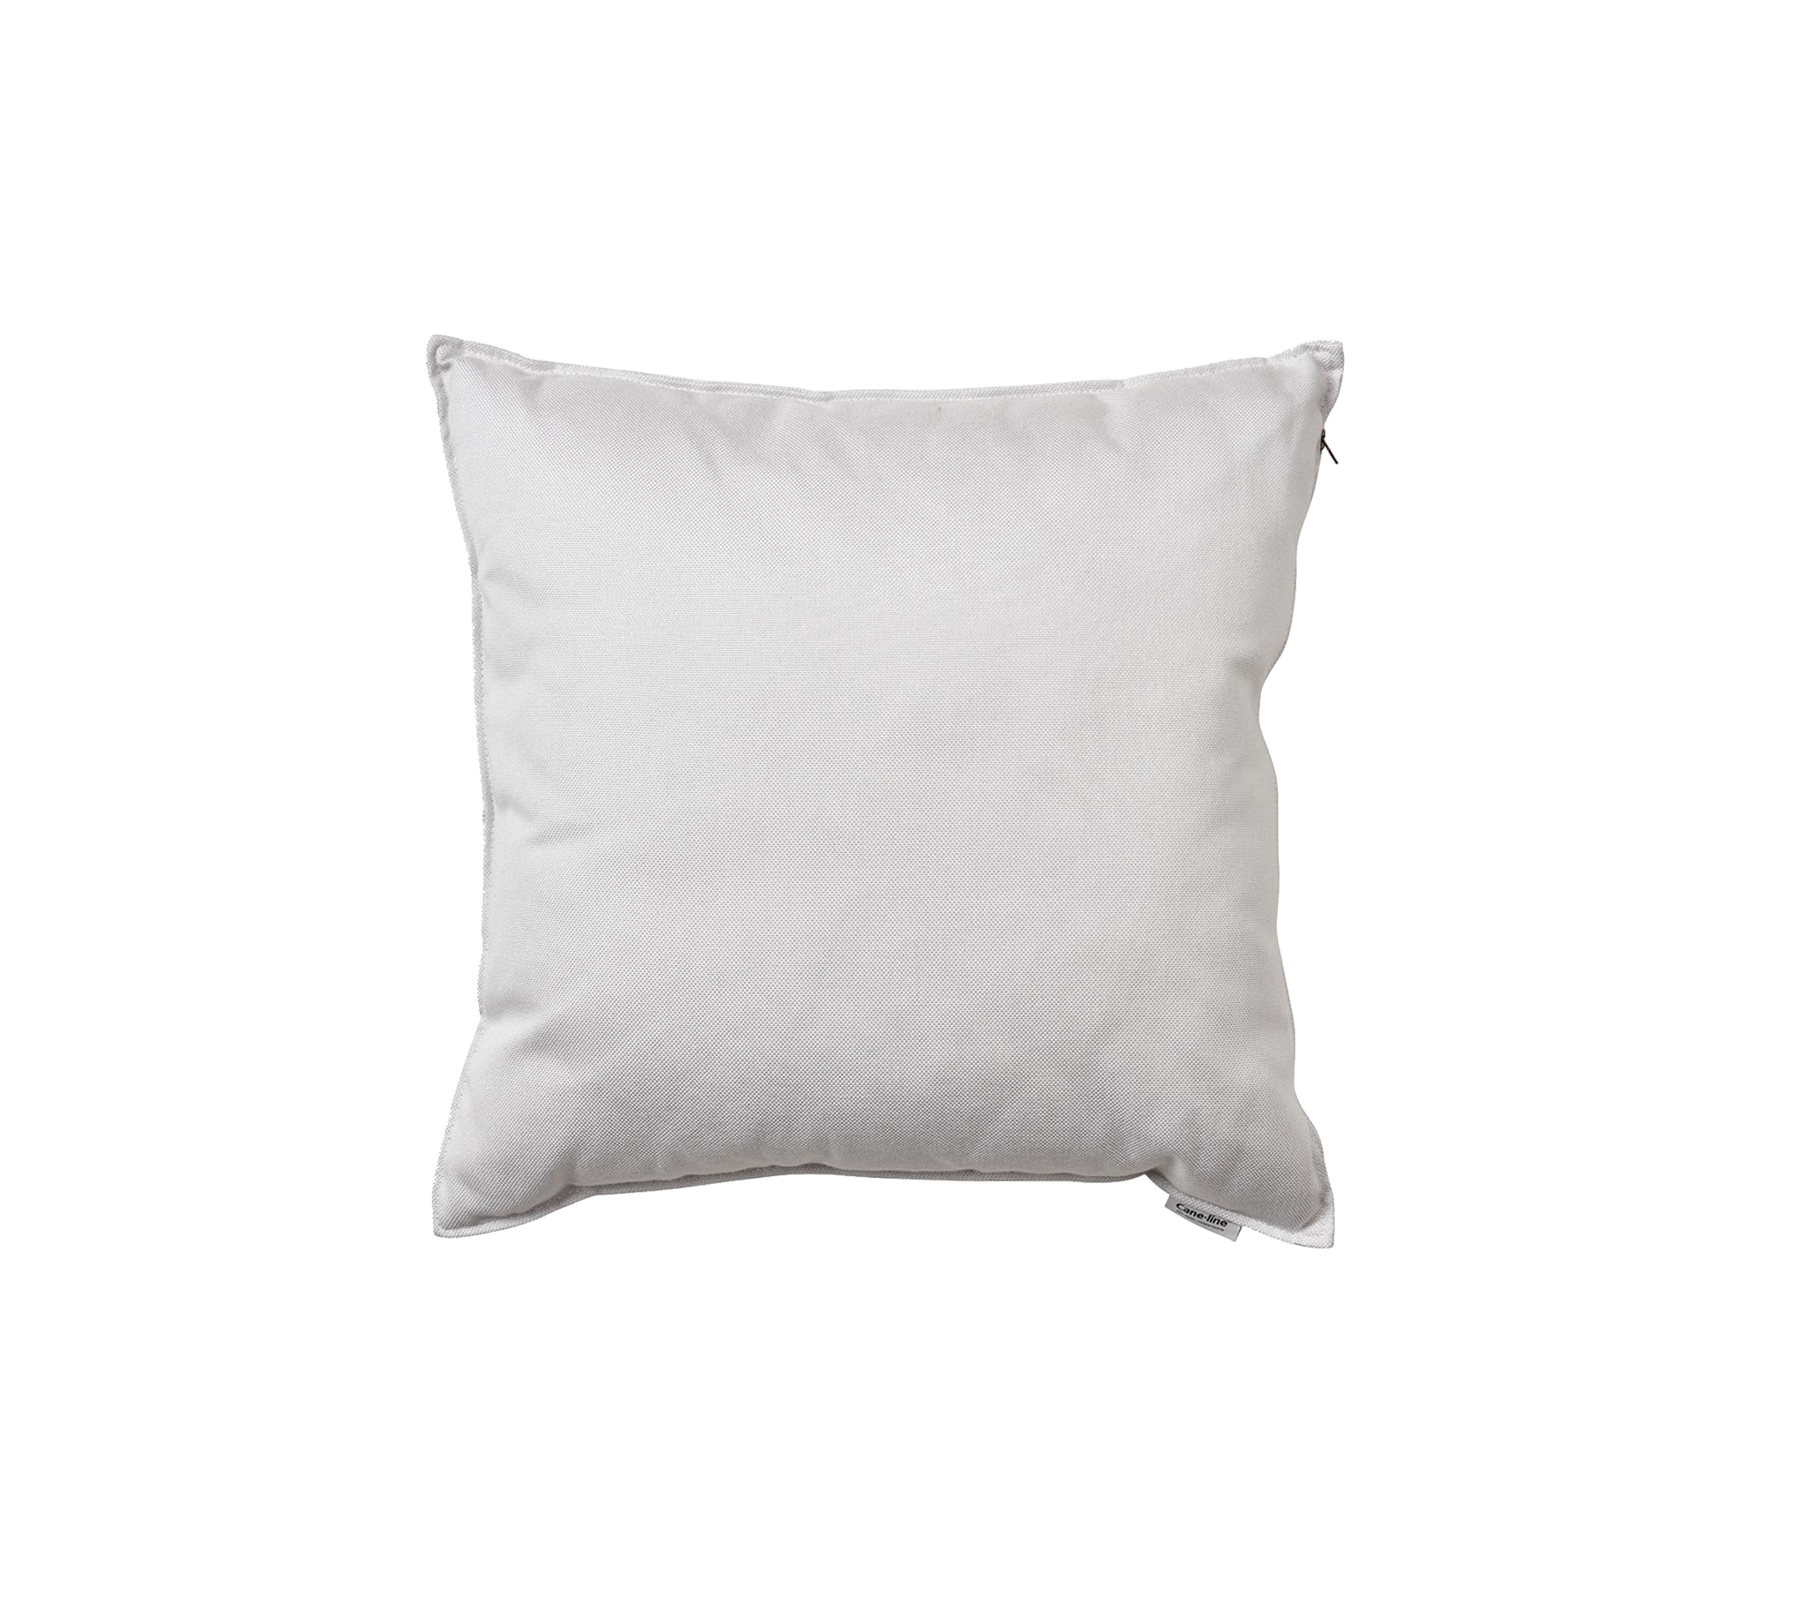 Scatter cushion, Cane-line Natté